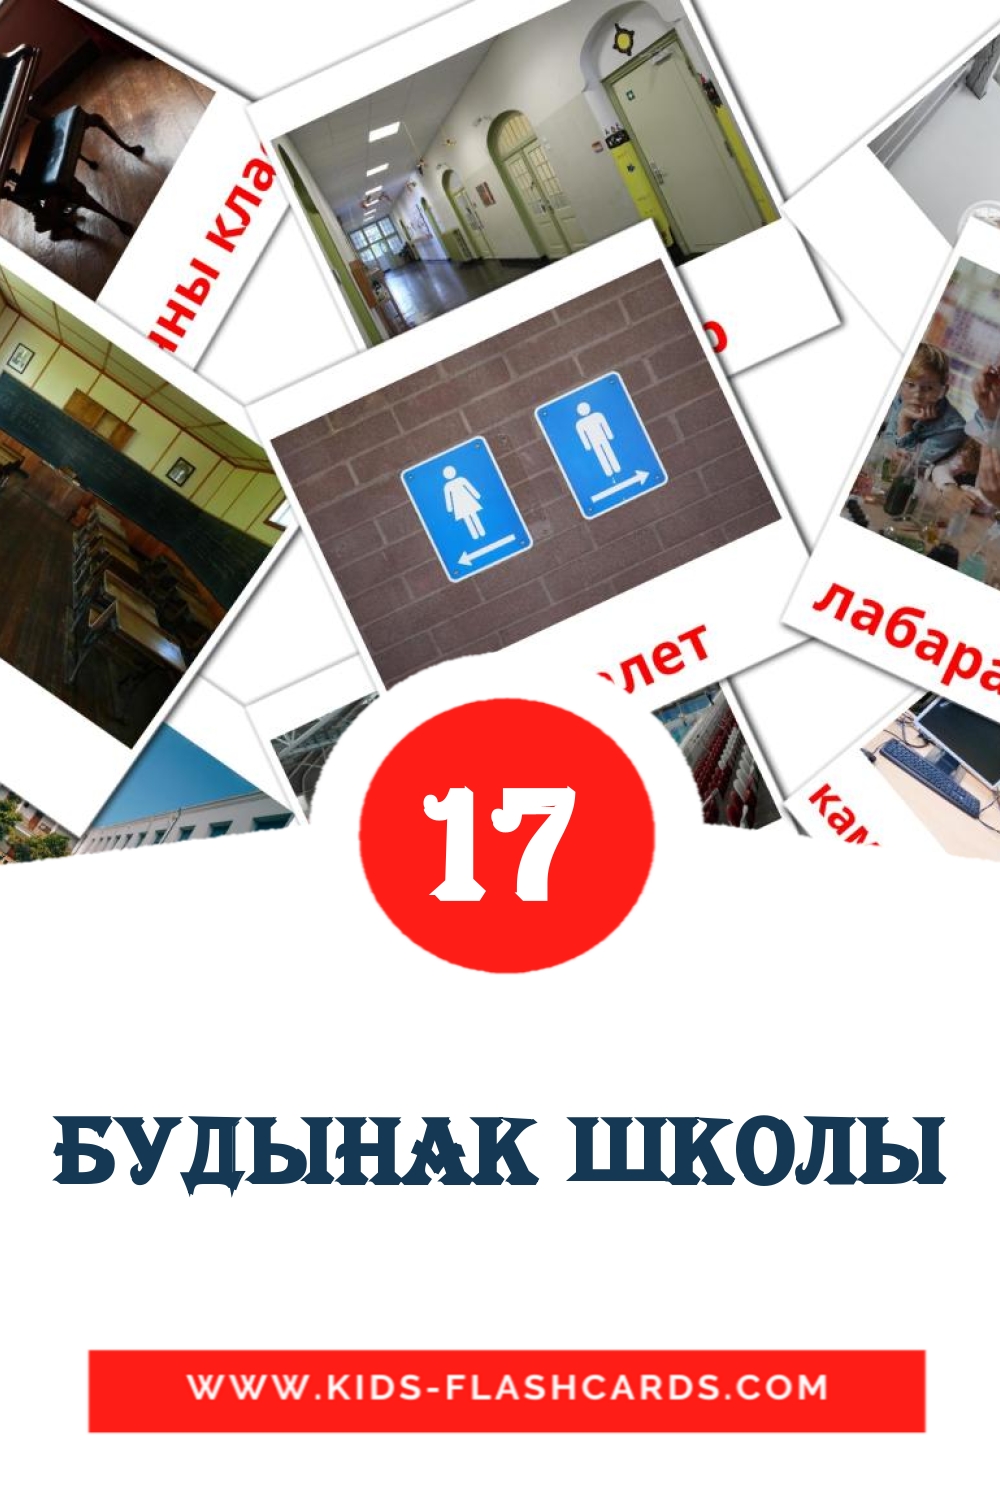 Будынак школы на беларуском для Детского Сада (17 карточек)